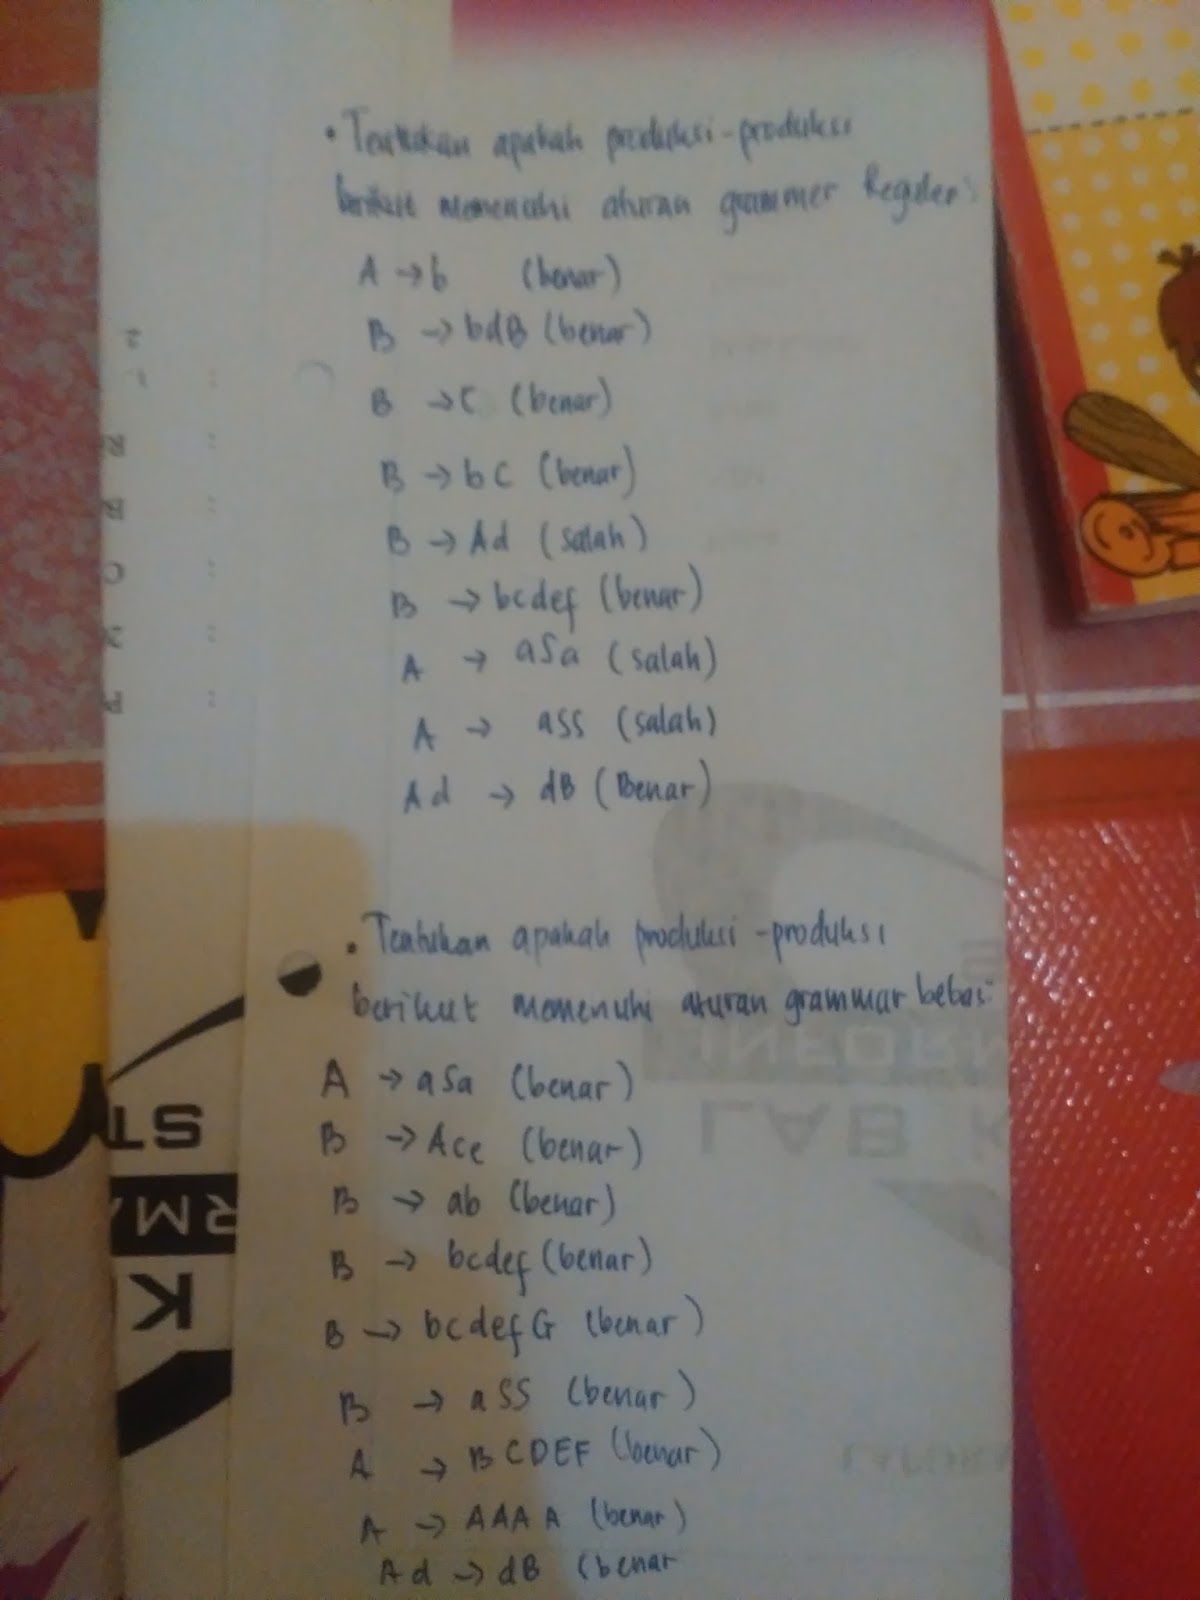 dvejetainis variantas dalam bahasa indonesia